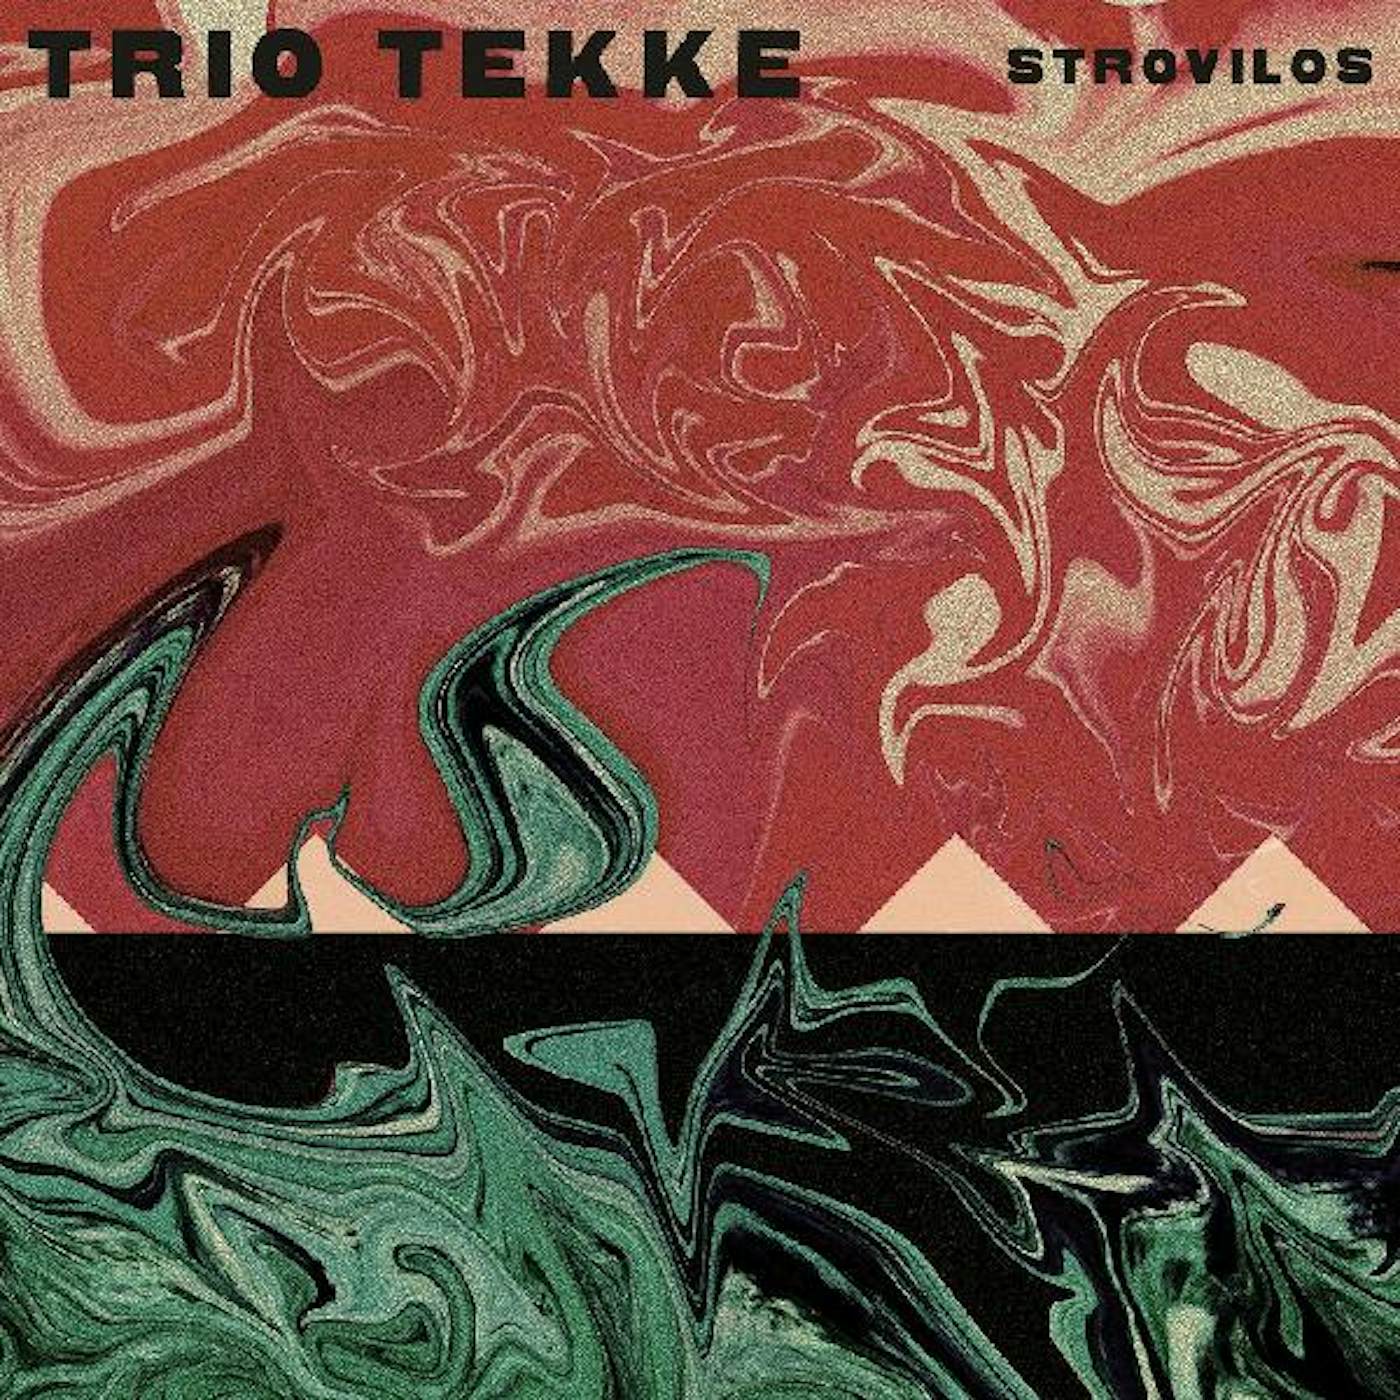 Trio Tekke Strovilos Vinyl Record